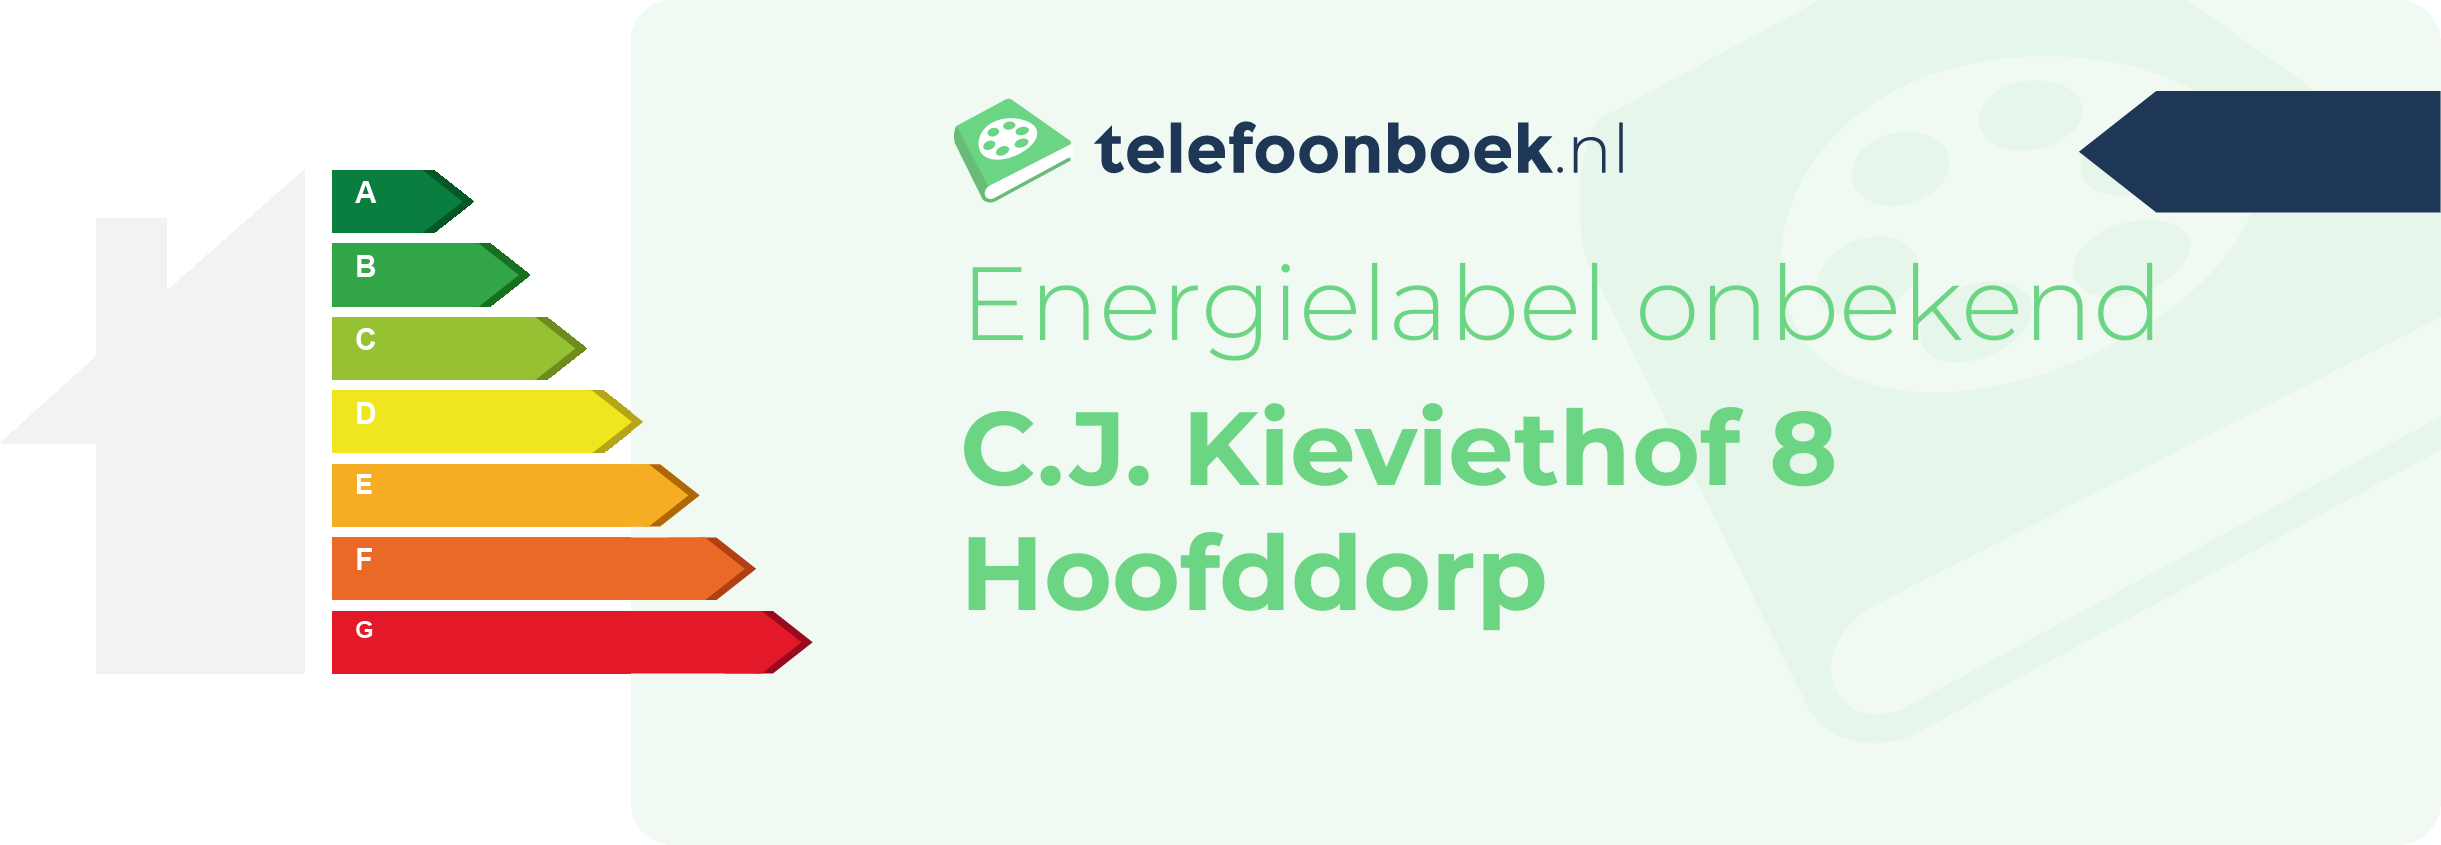 Energielabel C.J. Kieviethof 8 Hoofddorp